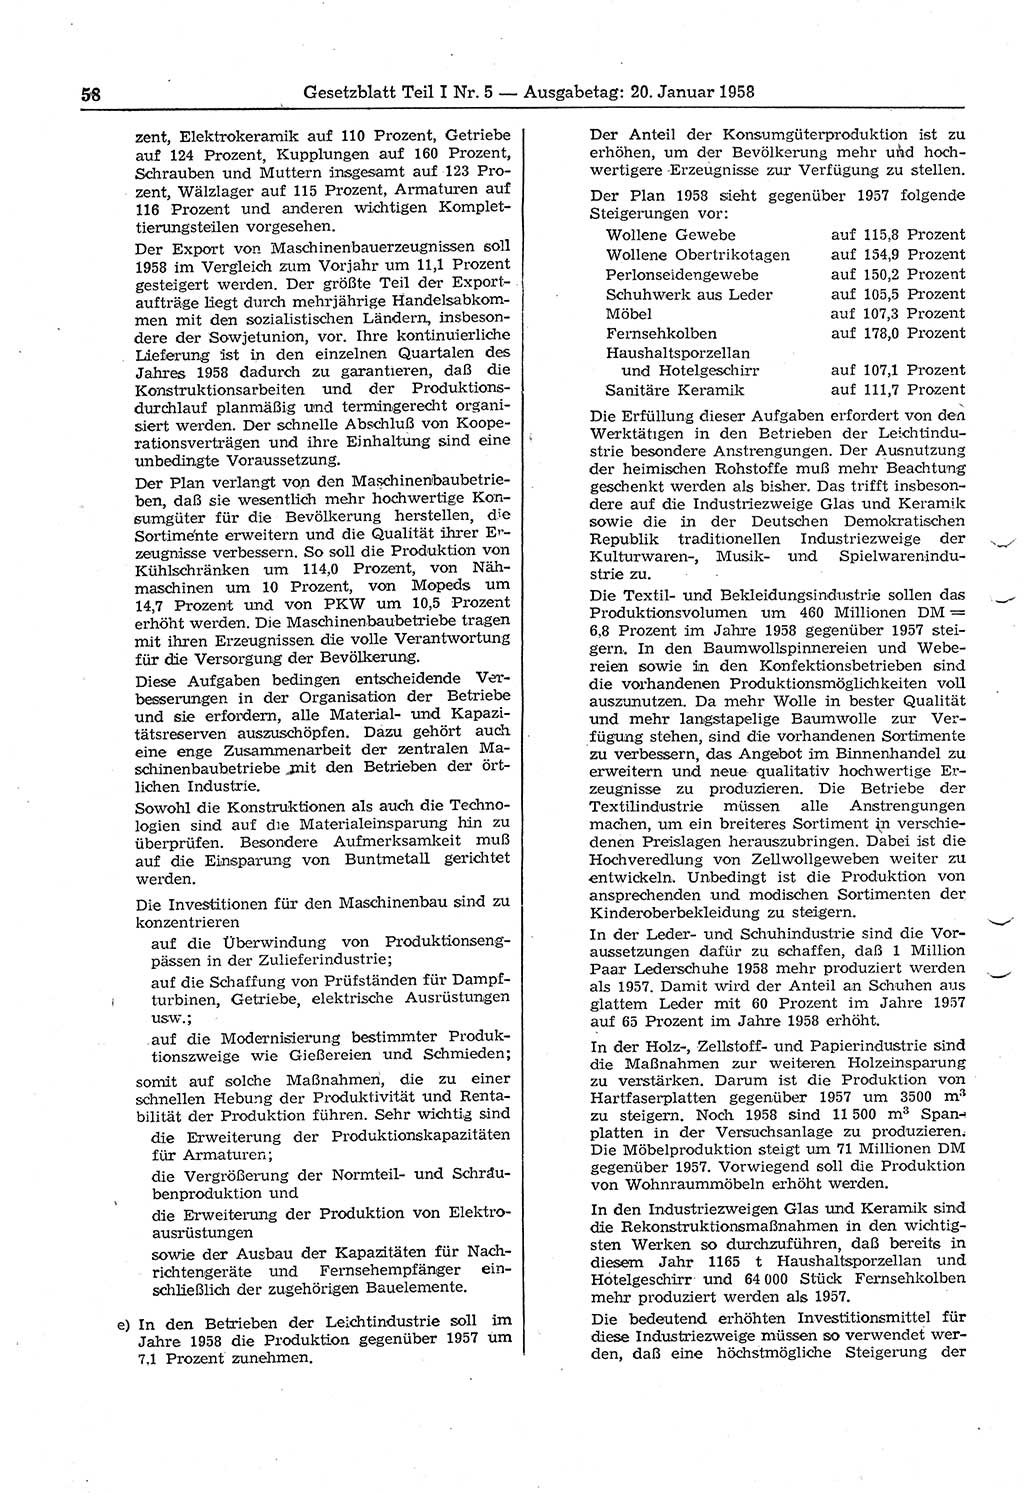 Gesetzblatt (GBl.) der Deutschen Demokratischen Republik (DDR) Teil Ⅰ 1958, Seite 58 (GBl. DDR Ⅰ 1958, S. 58)